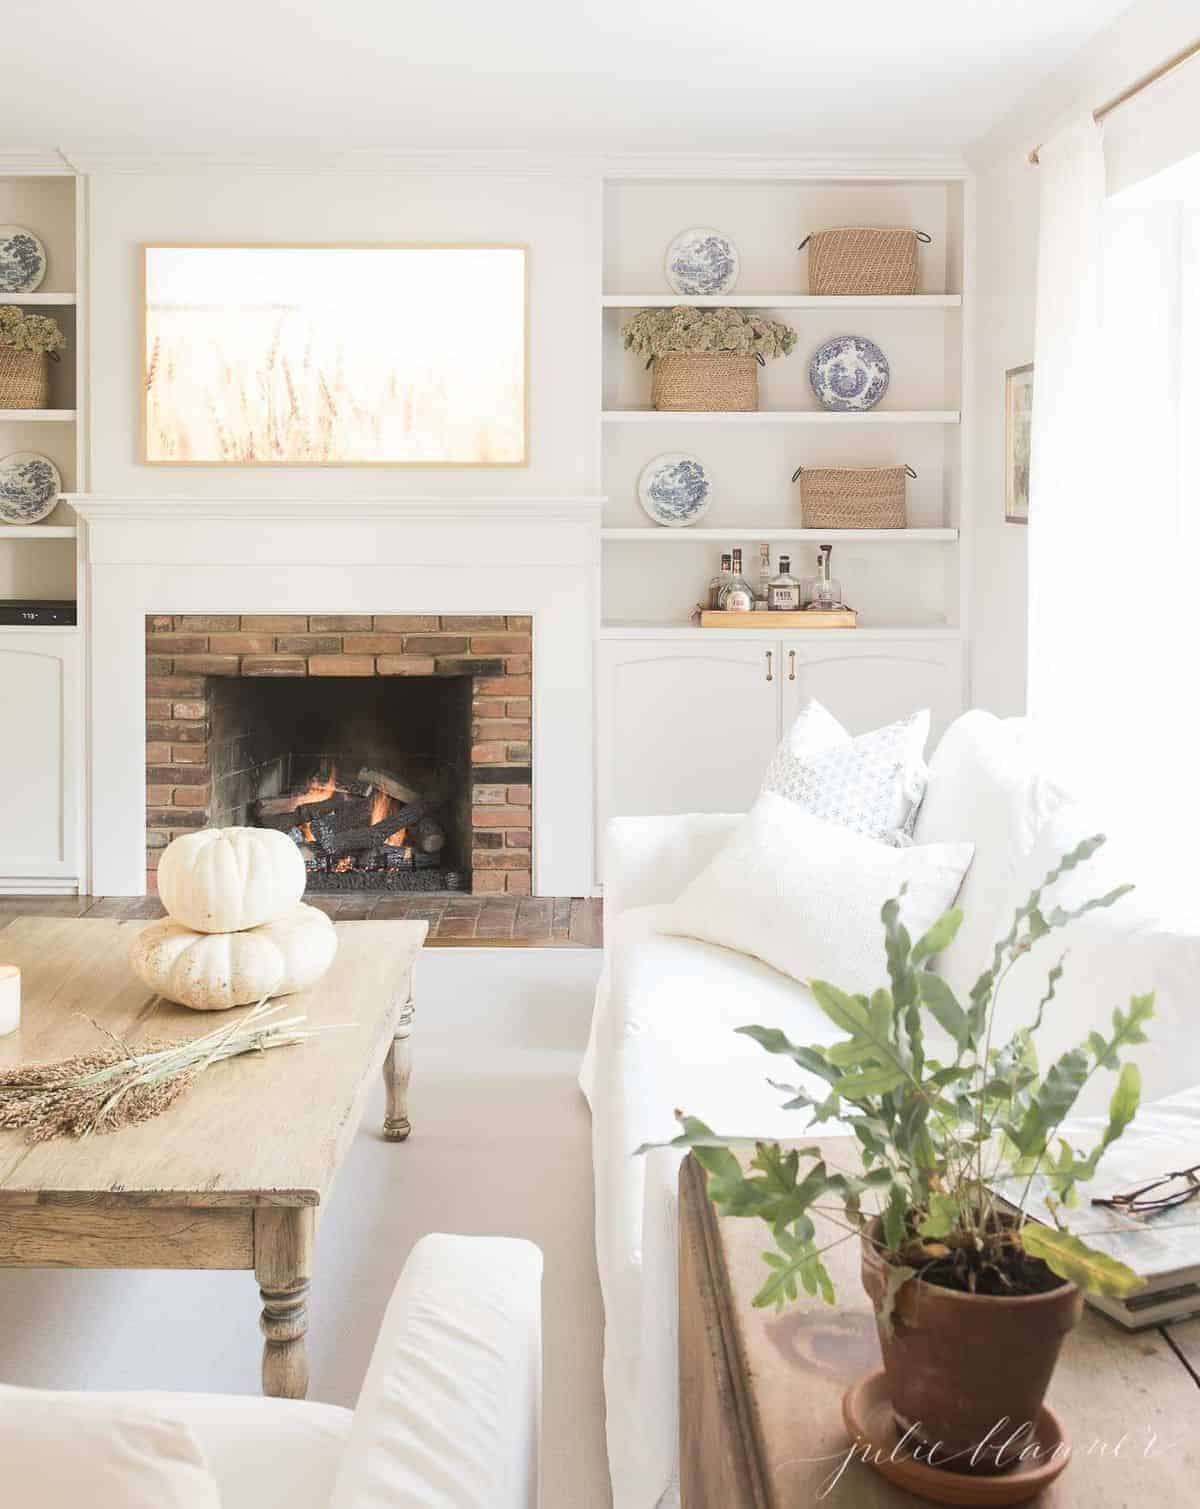 向后拉的视角是为秋季装饰的客厅，咖啡桌上摆放着南瓜和小麦，背景是燃烧的壁炉。# fallharvestdecor